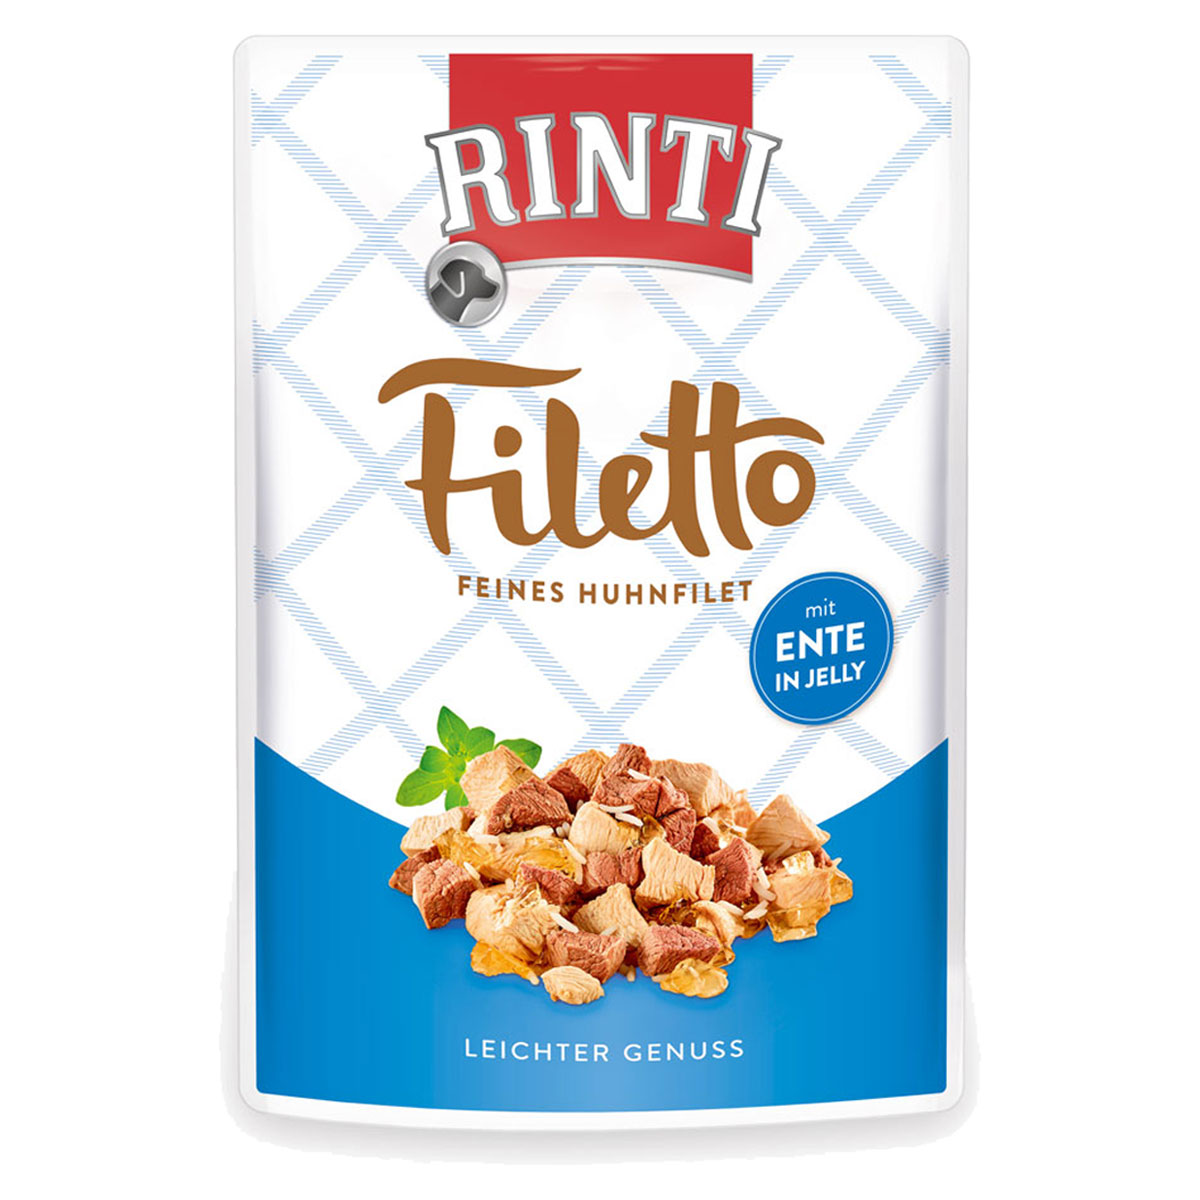 Rinti Filetto Huhn & Ente in Jelly 24x100g